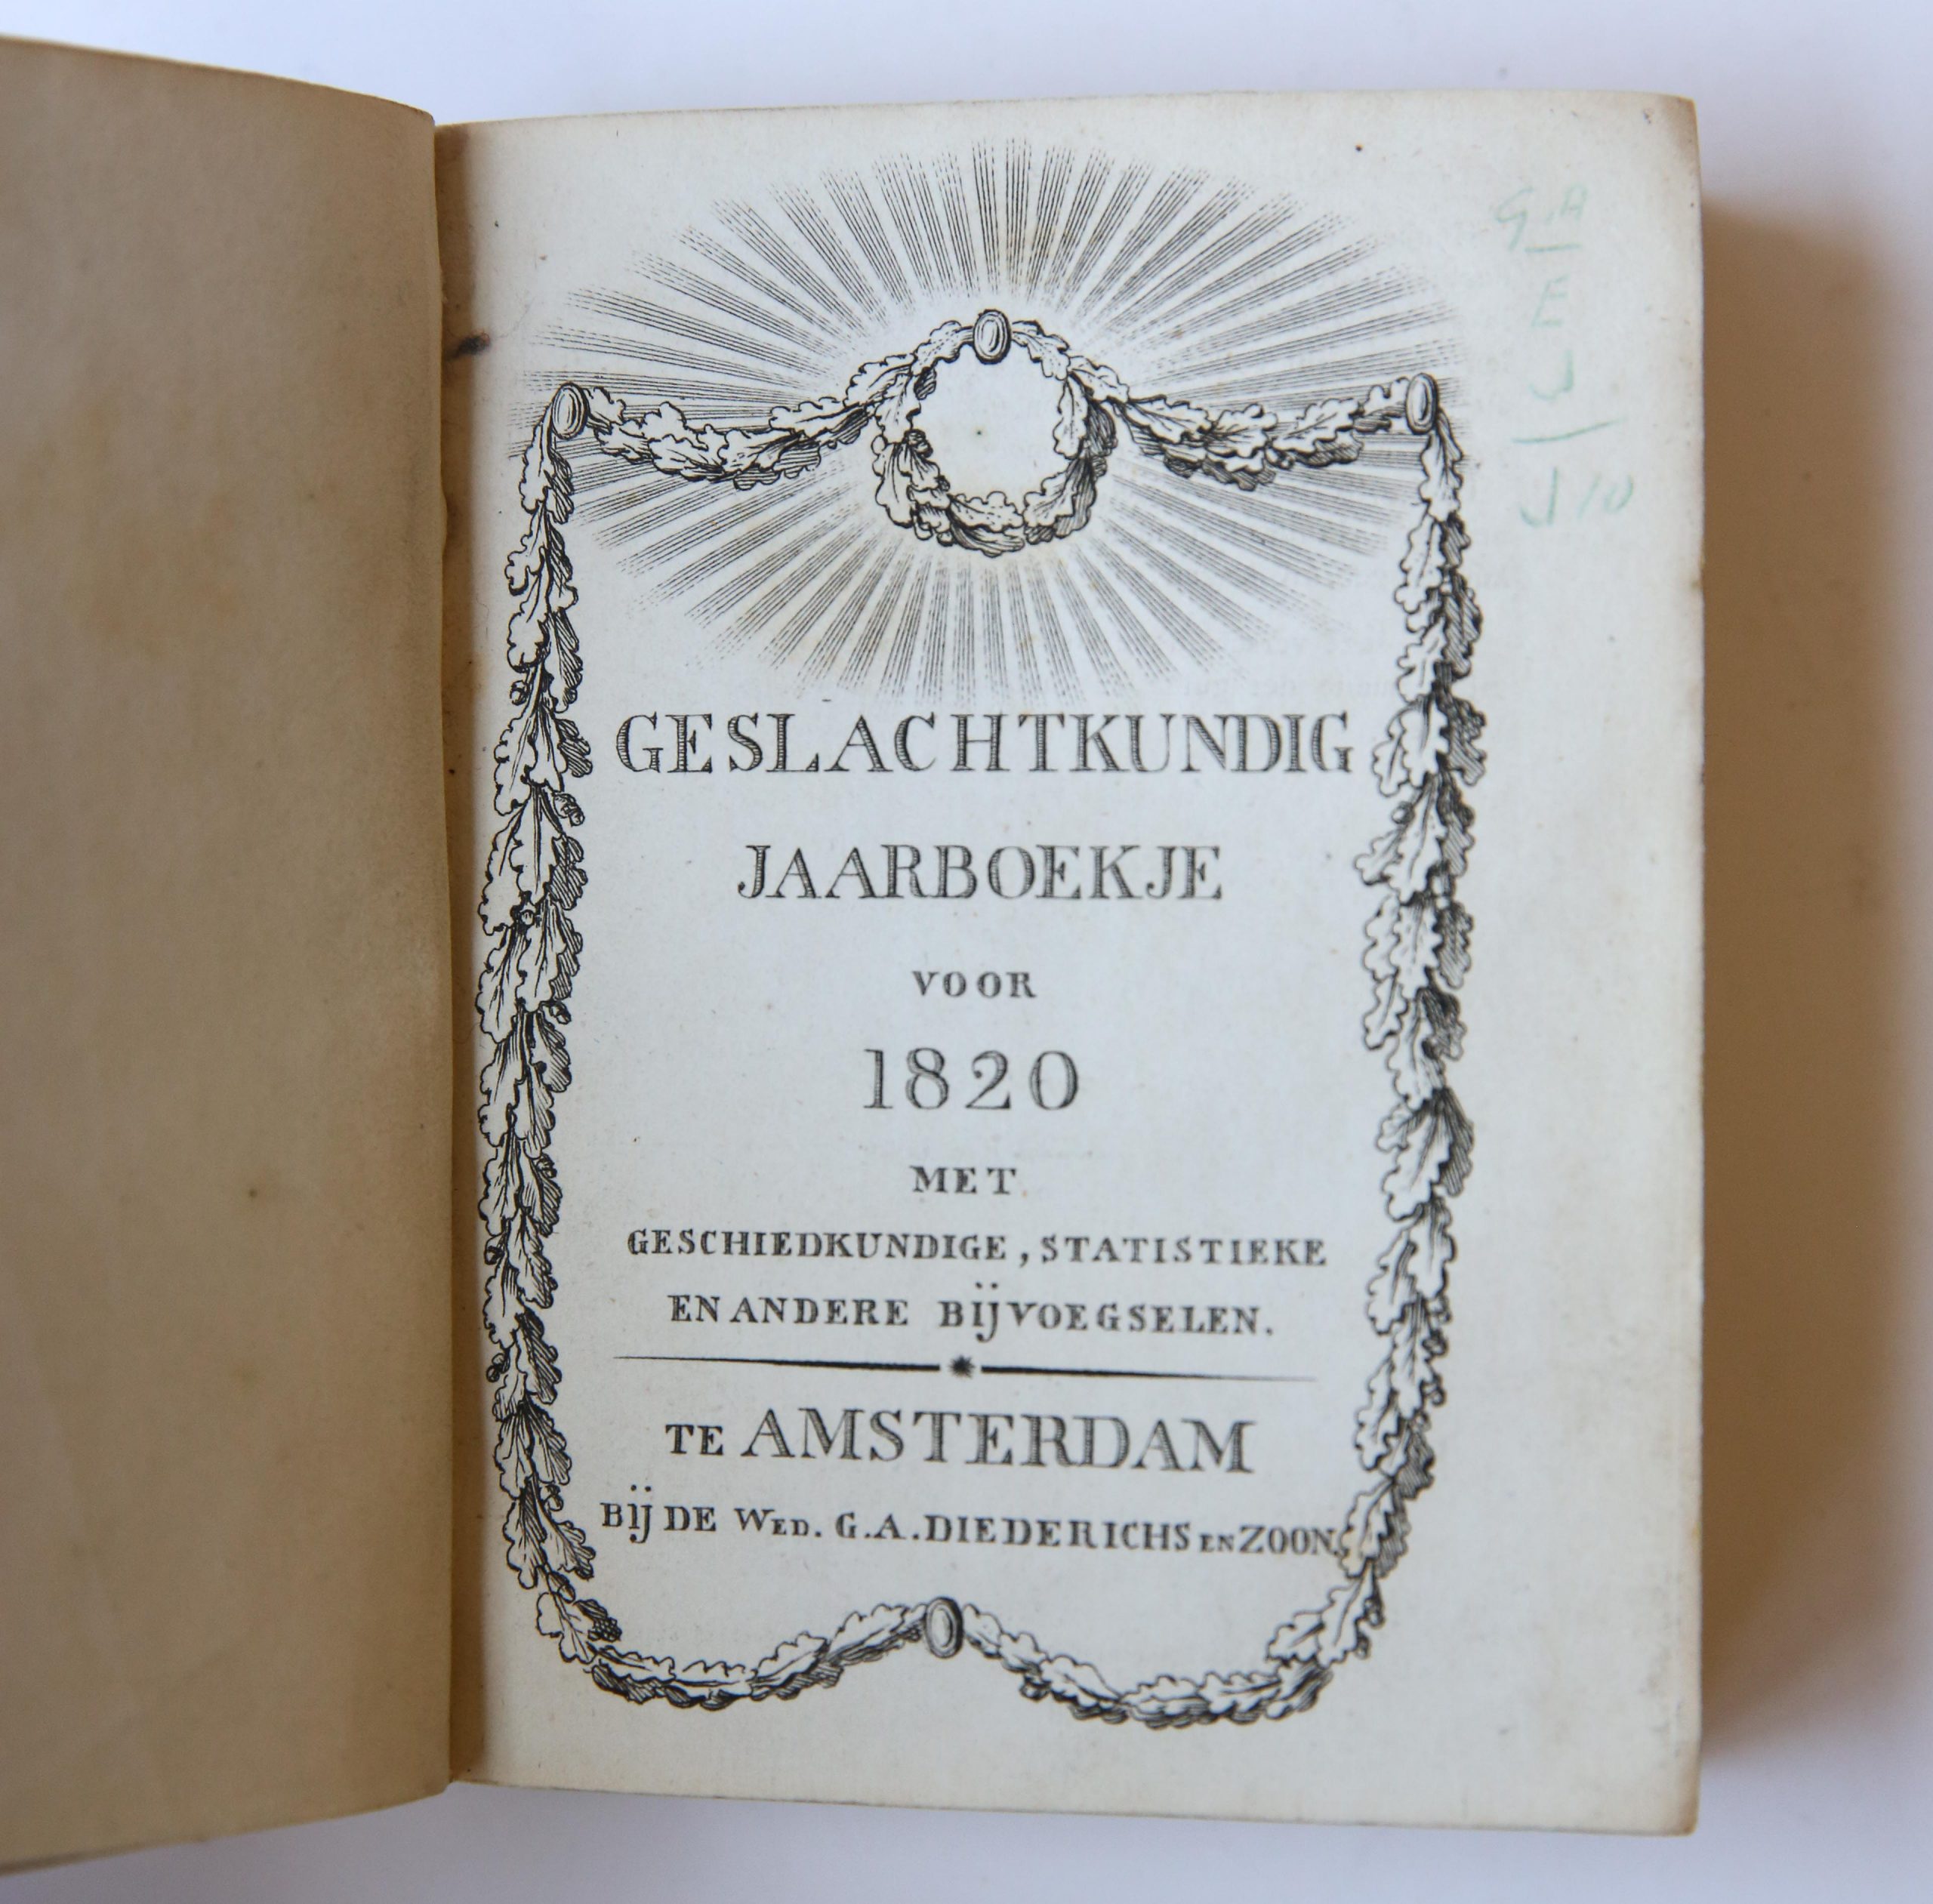  - Geslachtkundig Jaarboekje voor 1820. Amsterdam, Diederichs [1819], 278 pag. Origineel kartonnen bandje. Nederlandse navolging van de Almanach de Gotha. enkele beschadigingen.